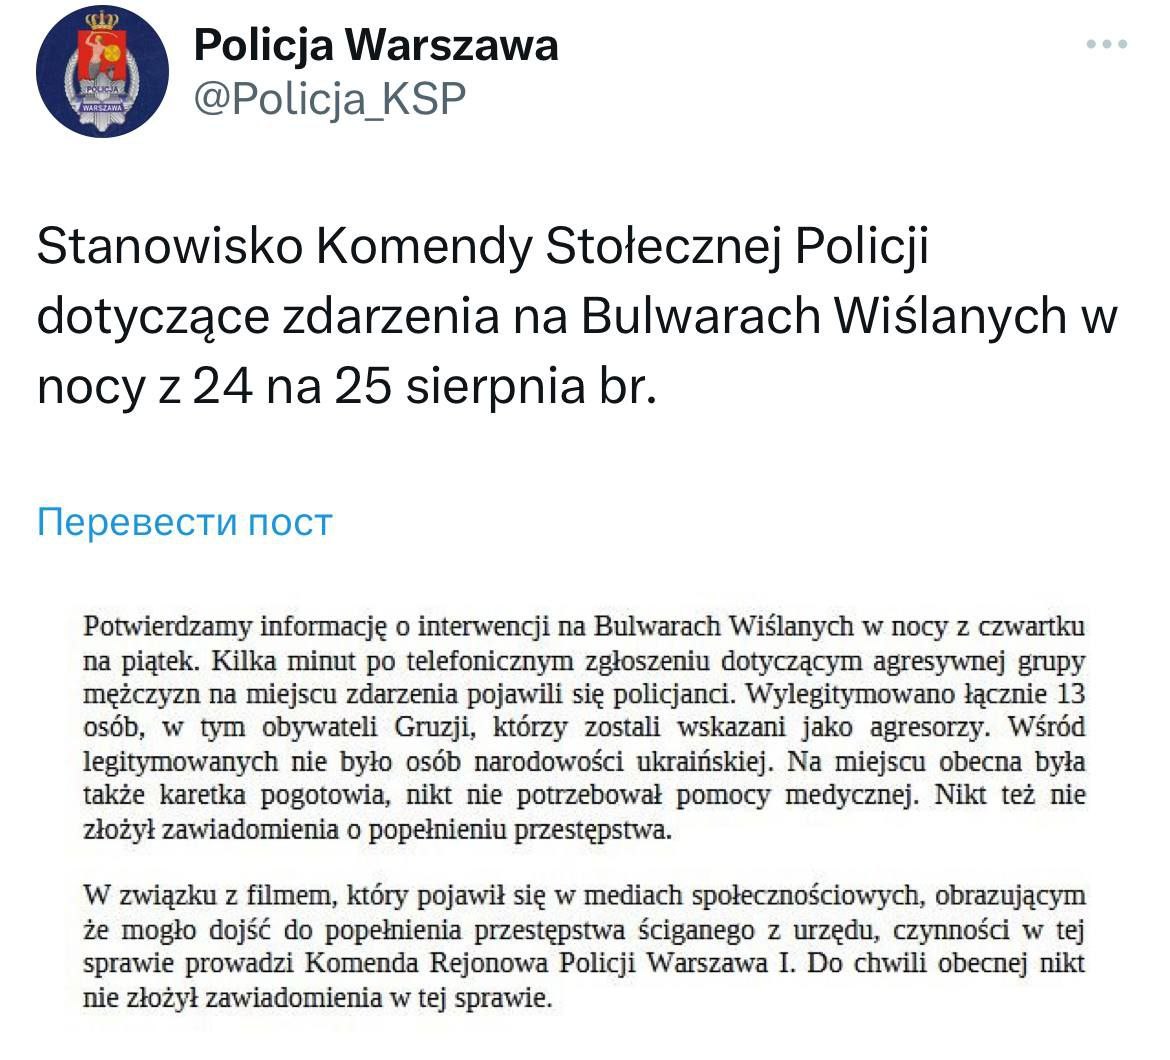 Польська газета пустила фейк – українці нібито напали на поляків. Поліція: Це були грузини